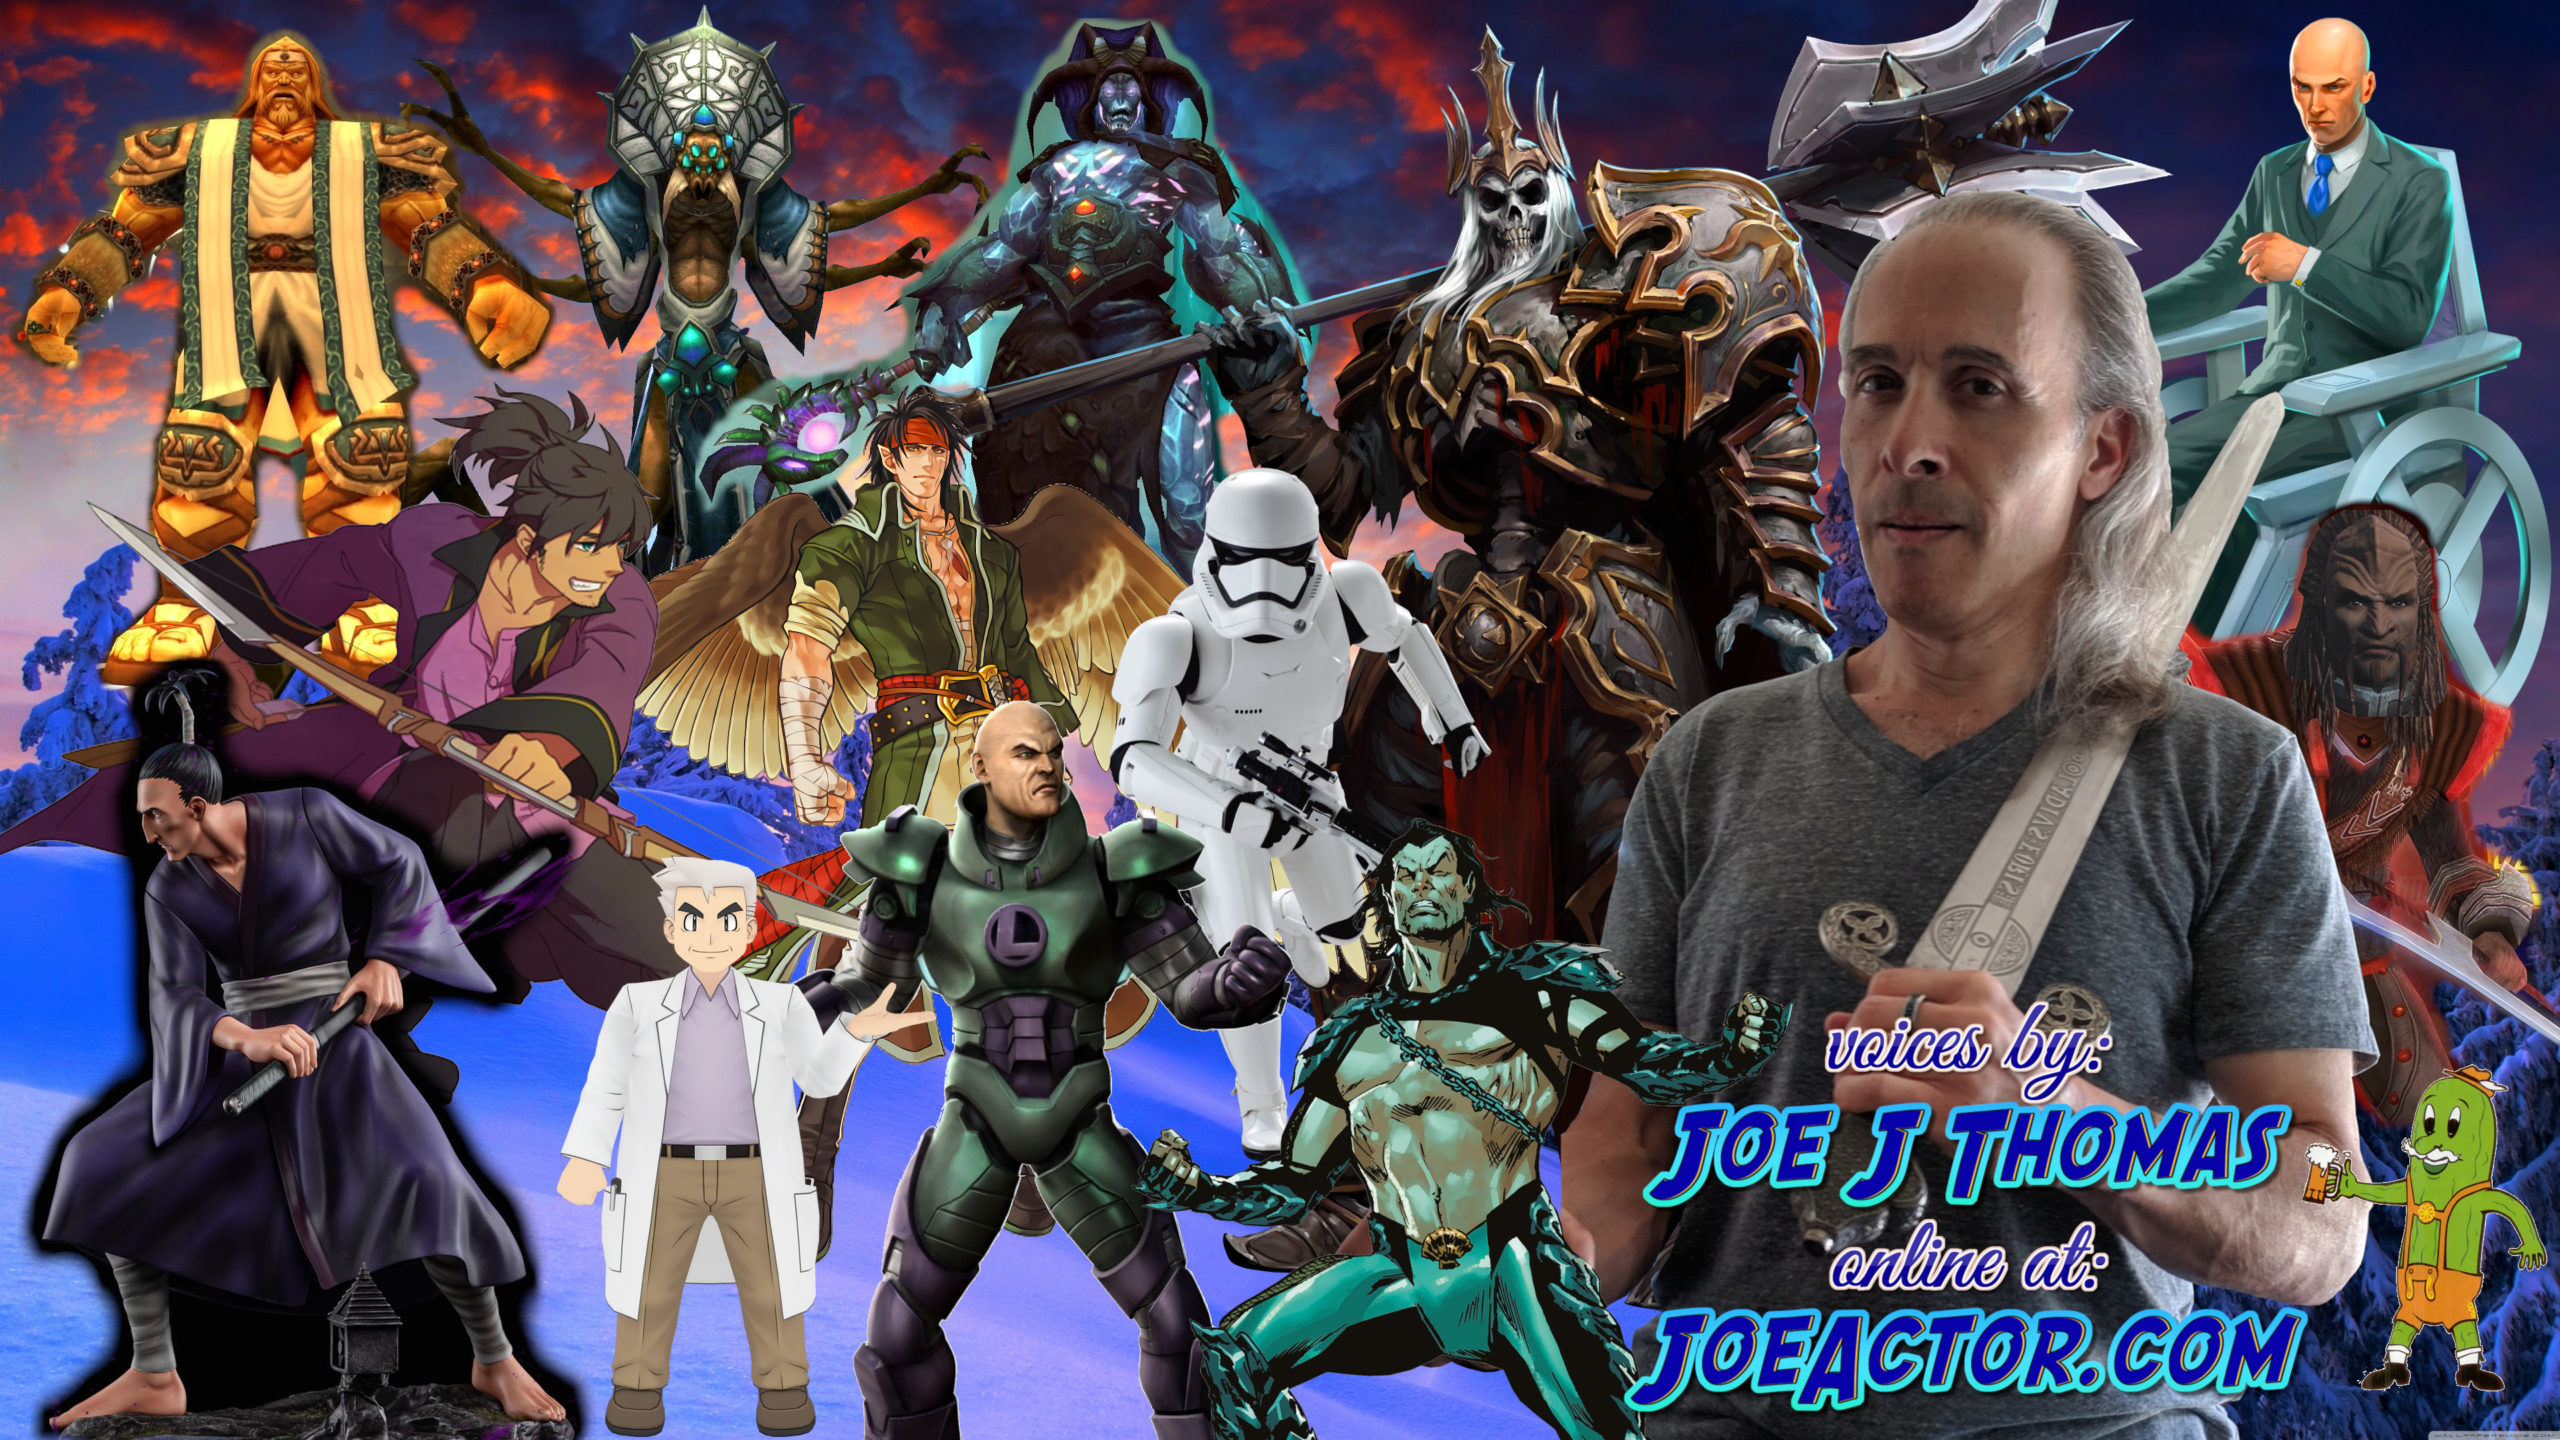 Joe J Thomas: Characters (JoeActor.com)